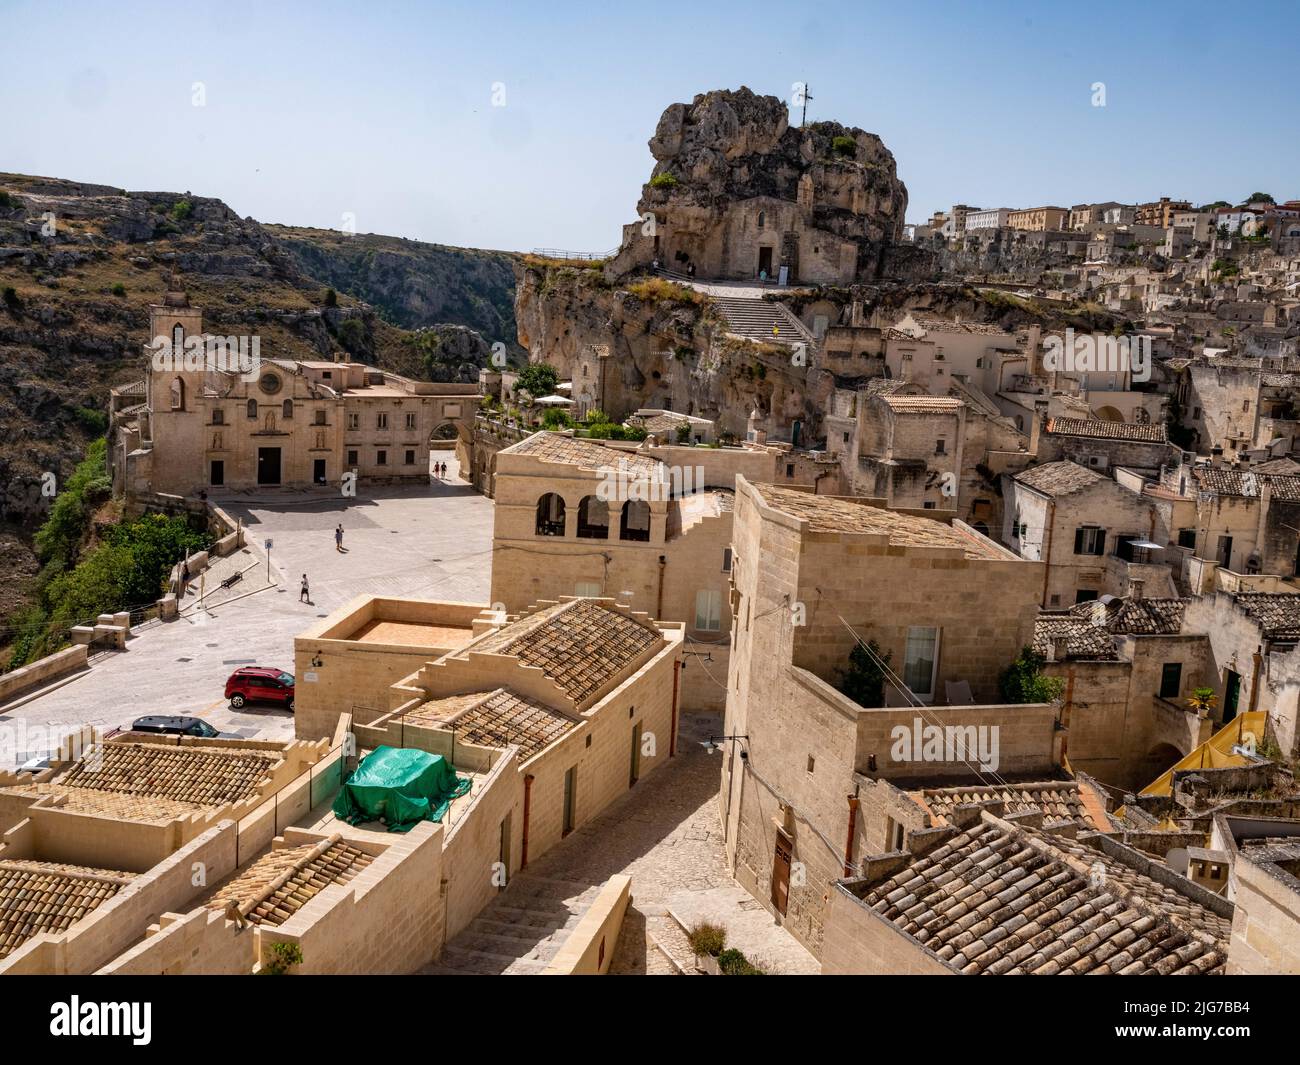 Vista panoramica dei Sassi di Matera, le antiche abitazioni rupestri e la città vecchia di Matera, Italia che risale al Paleolitico Foto Stock